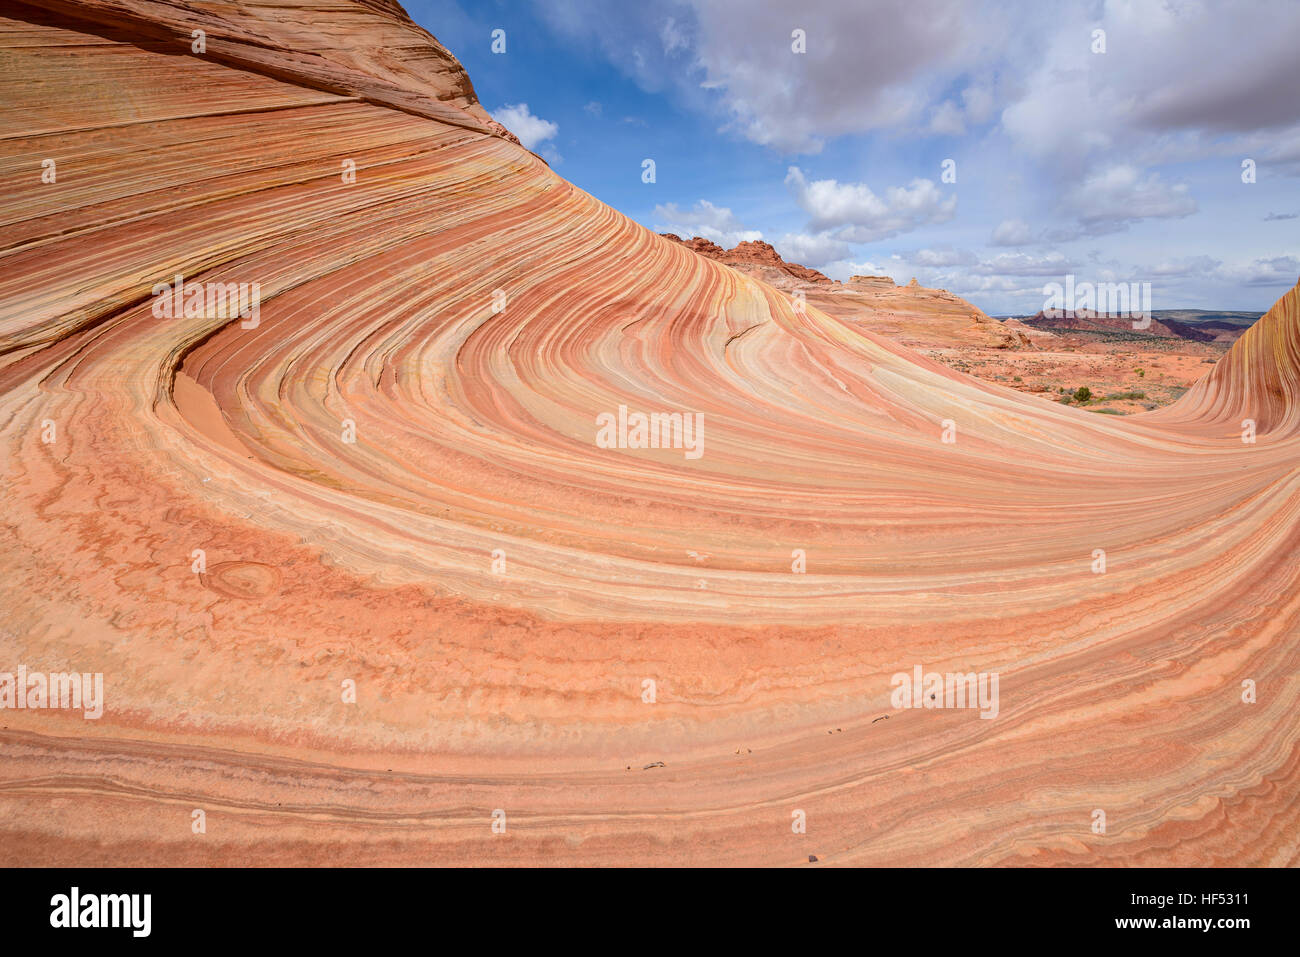 Turbinii di arenaria - strati di pietra arenaria colorata all'onda, una drastica erosione di roccia arenaria formazione, confine Arizona-Utah. Foto Stock